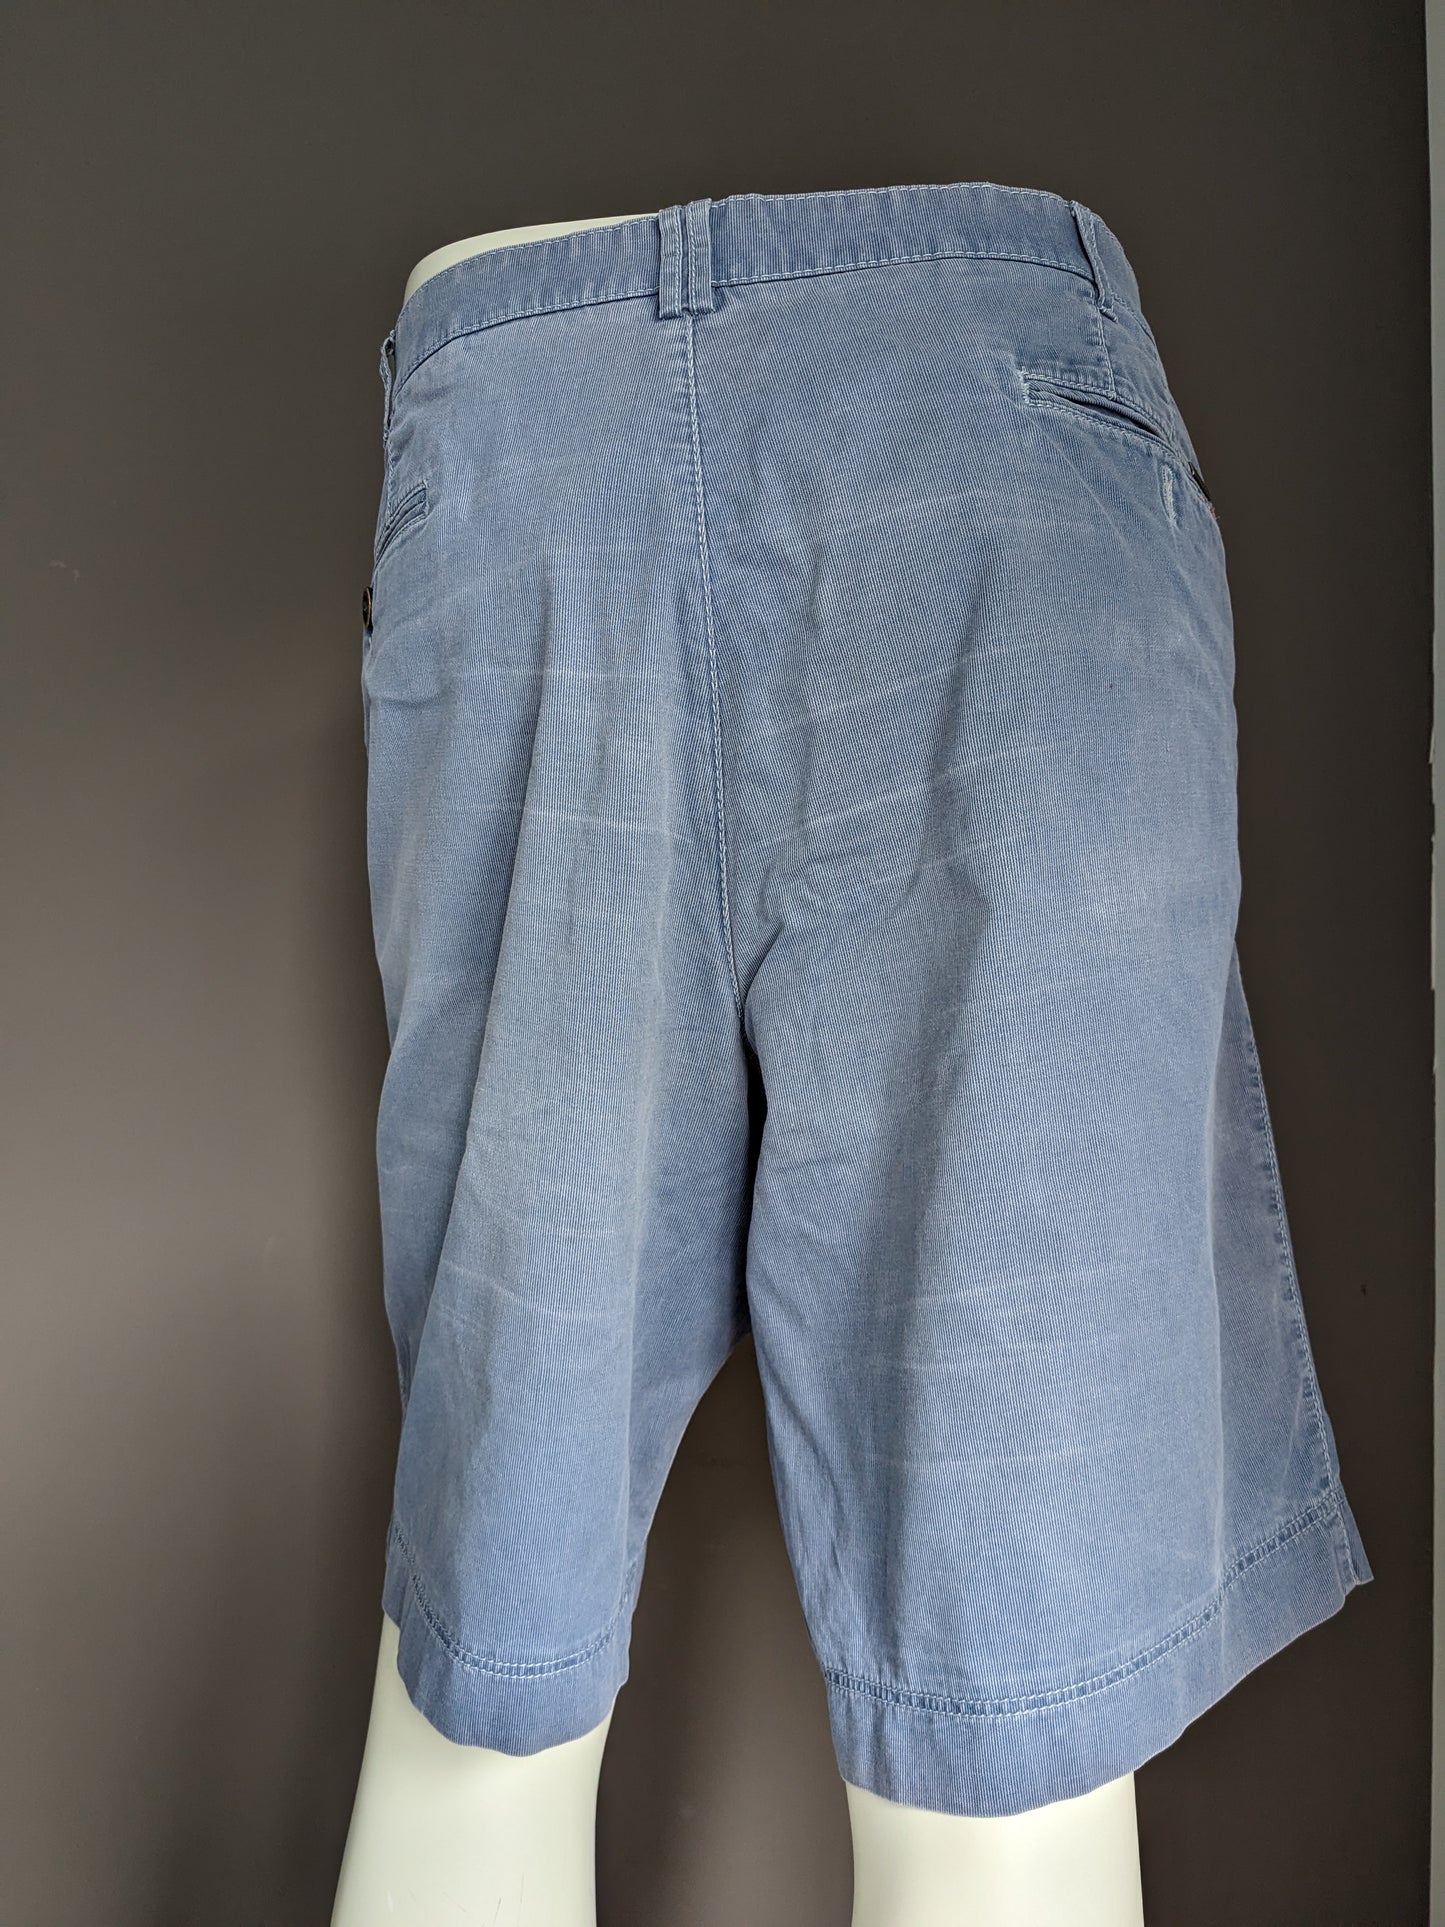 Meyer shorts. Blue striped motif. Size 29 (58 / XL)